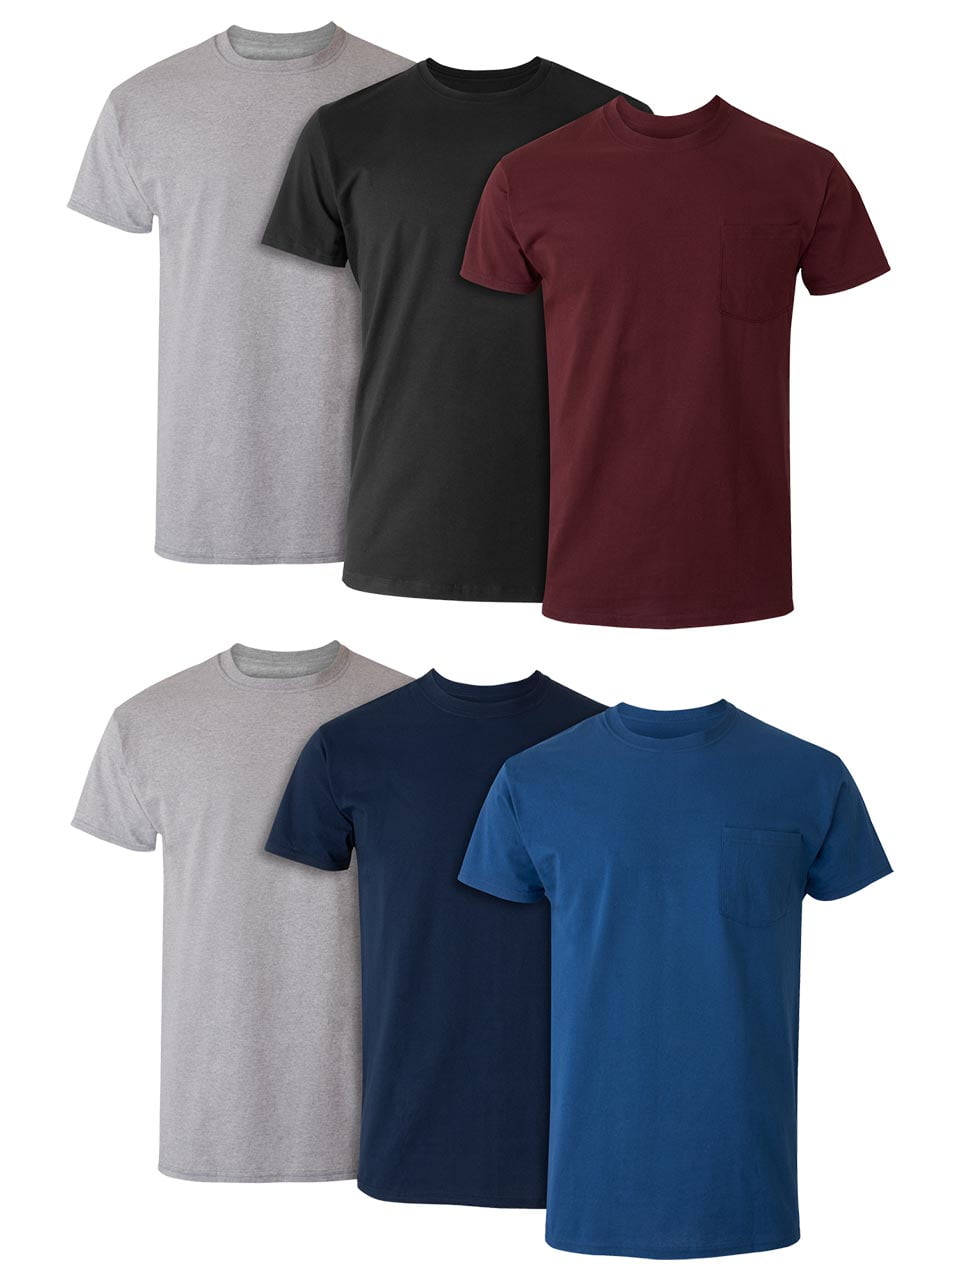 kalender gjorde det Bevidst Hanes Men's Value Pack Assorted Pocket T-Shirt Undershirts, 6 Pack -  Walmart.com